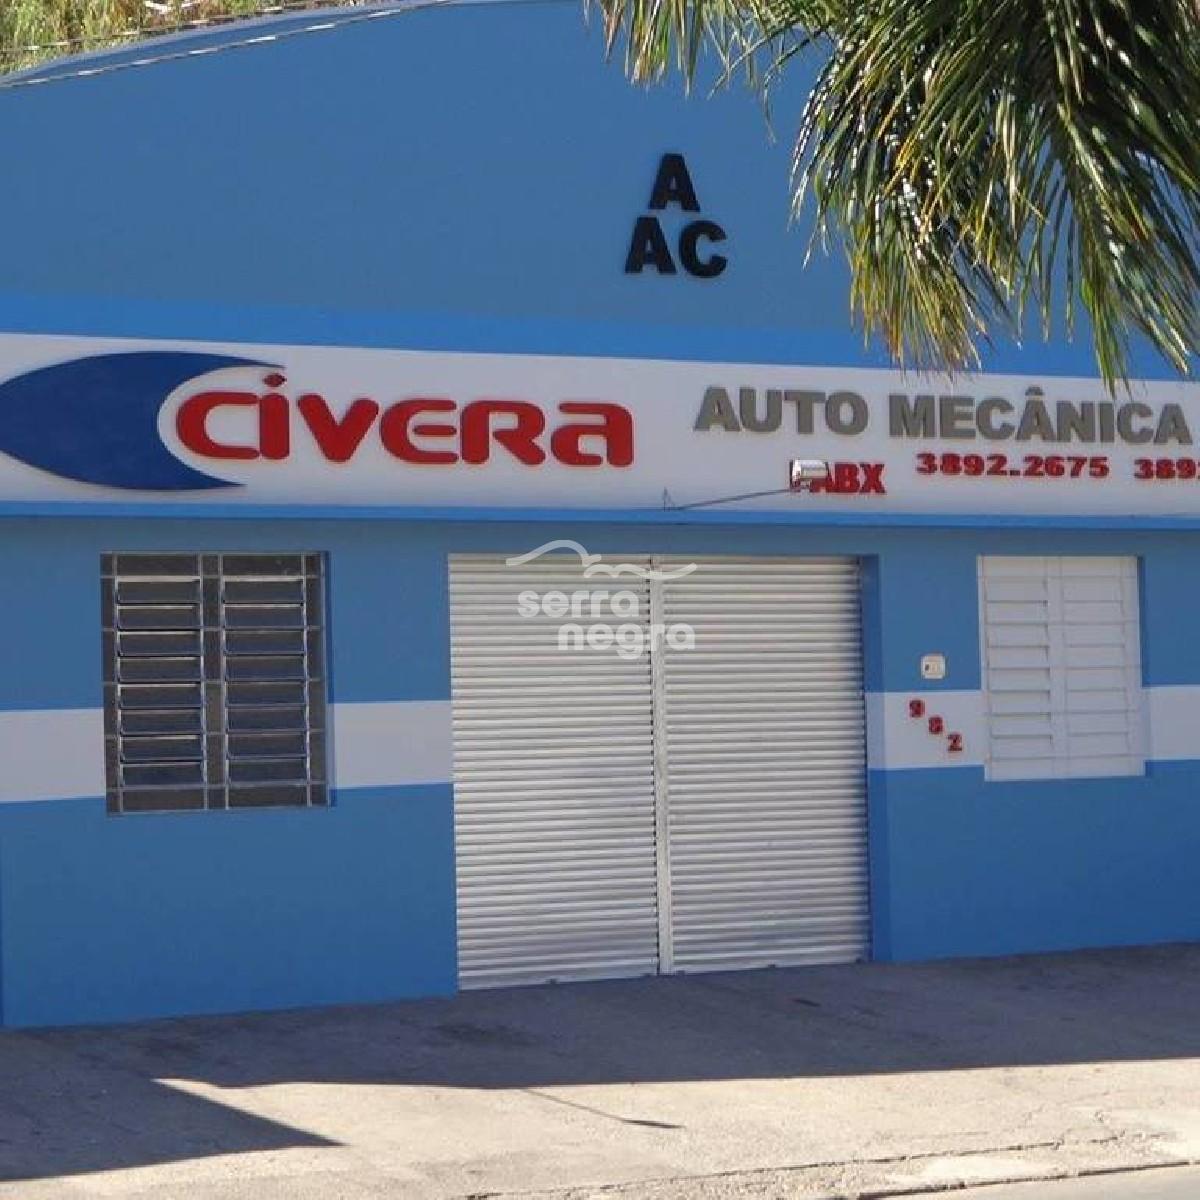 Auto Mecânica Civera em Serra Negra/SP no Circuito das Águas Paulista